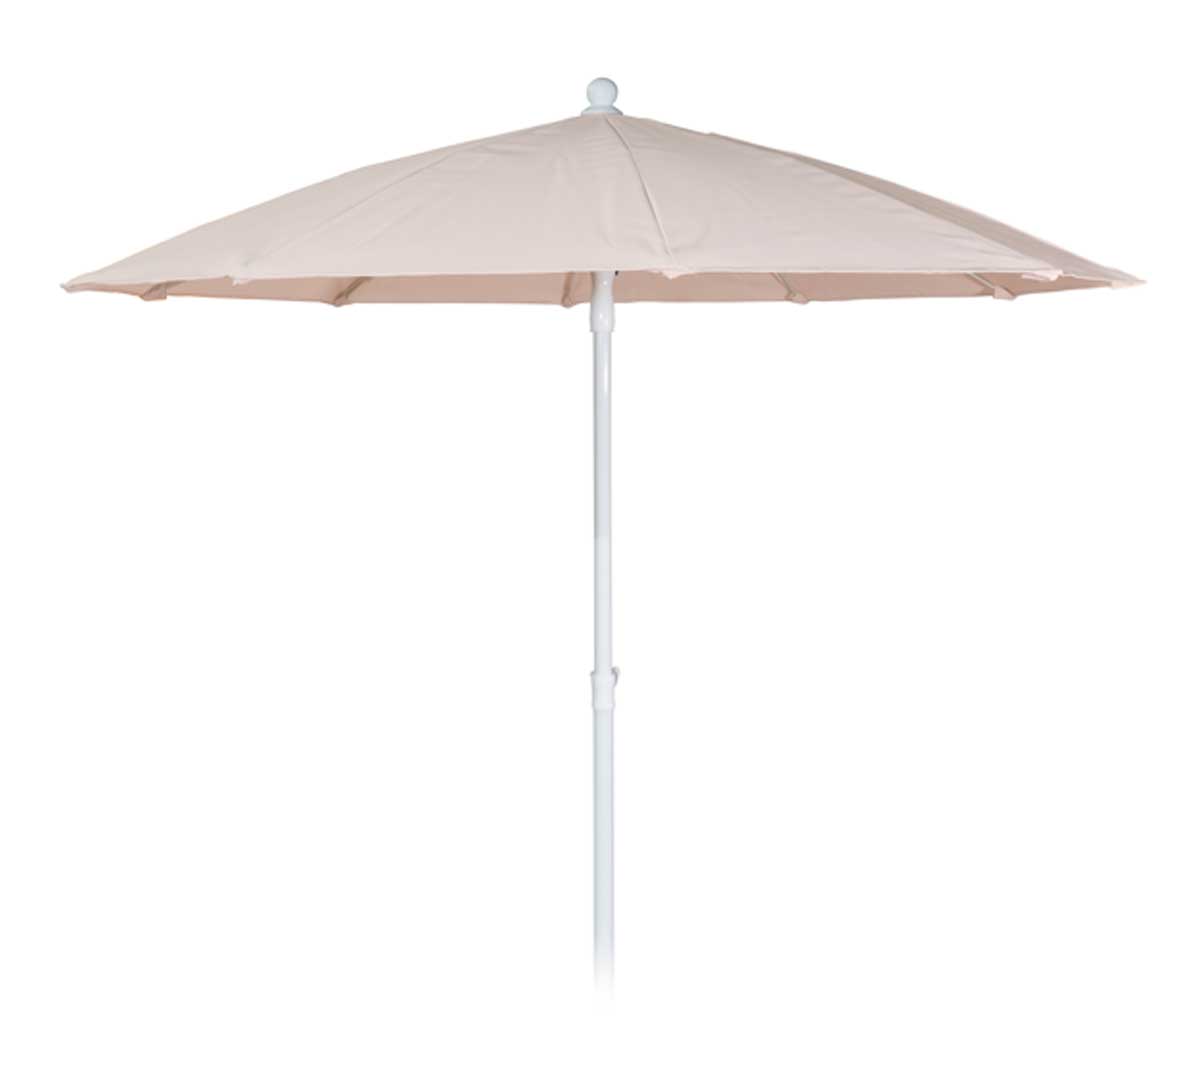 conva-parasol-aluminio-heavy-duty-833-01